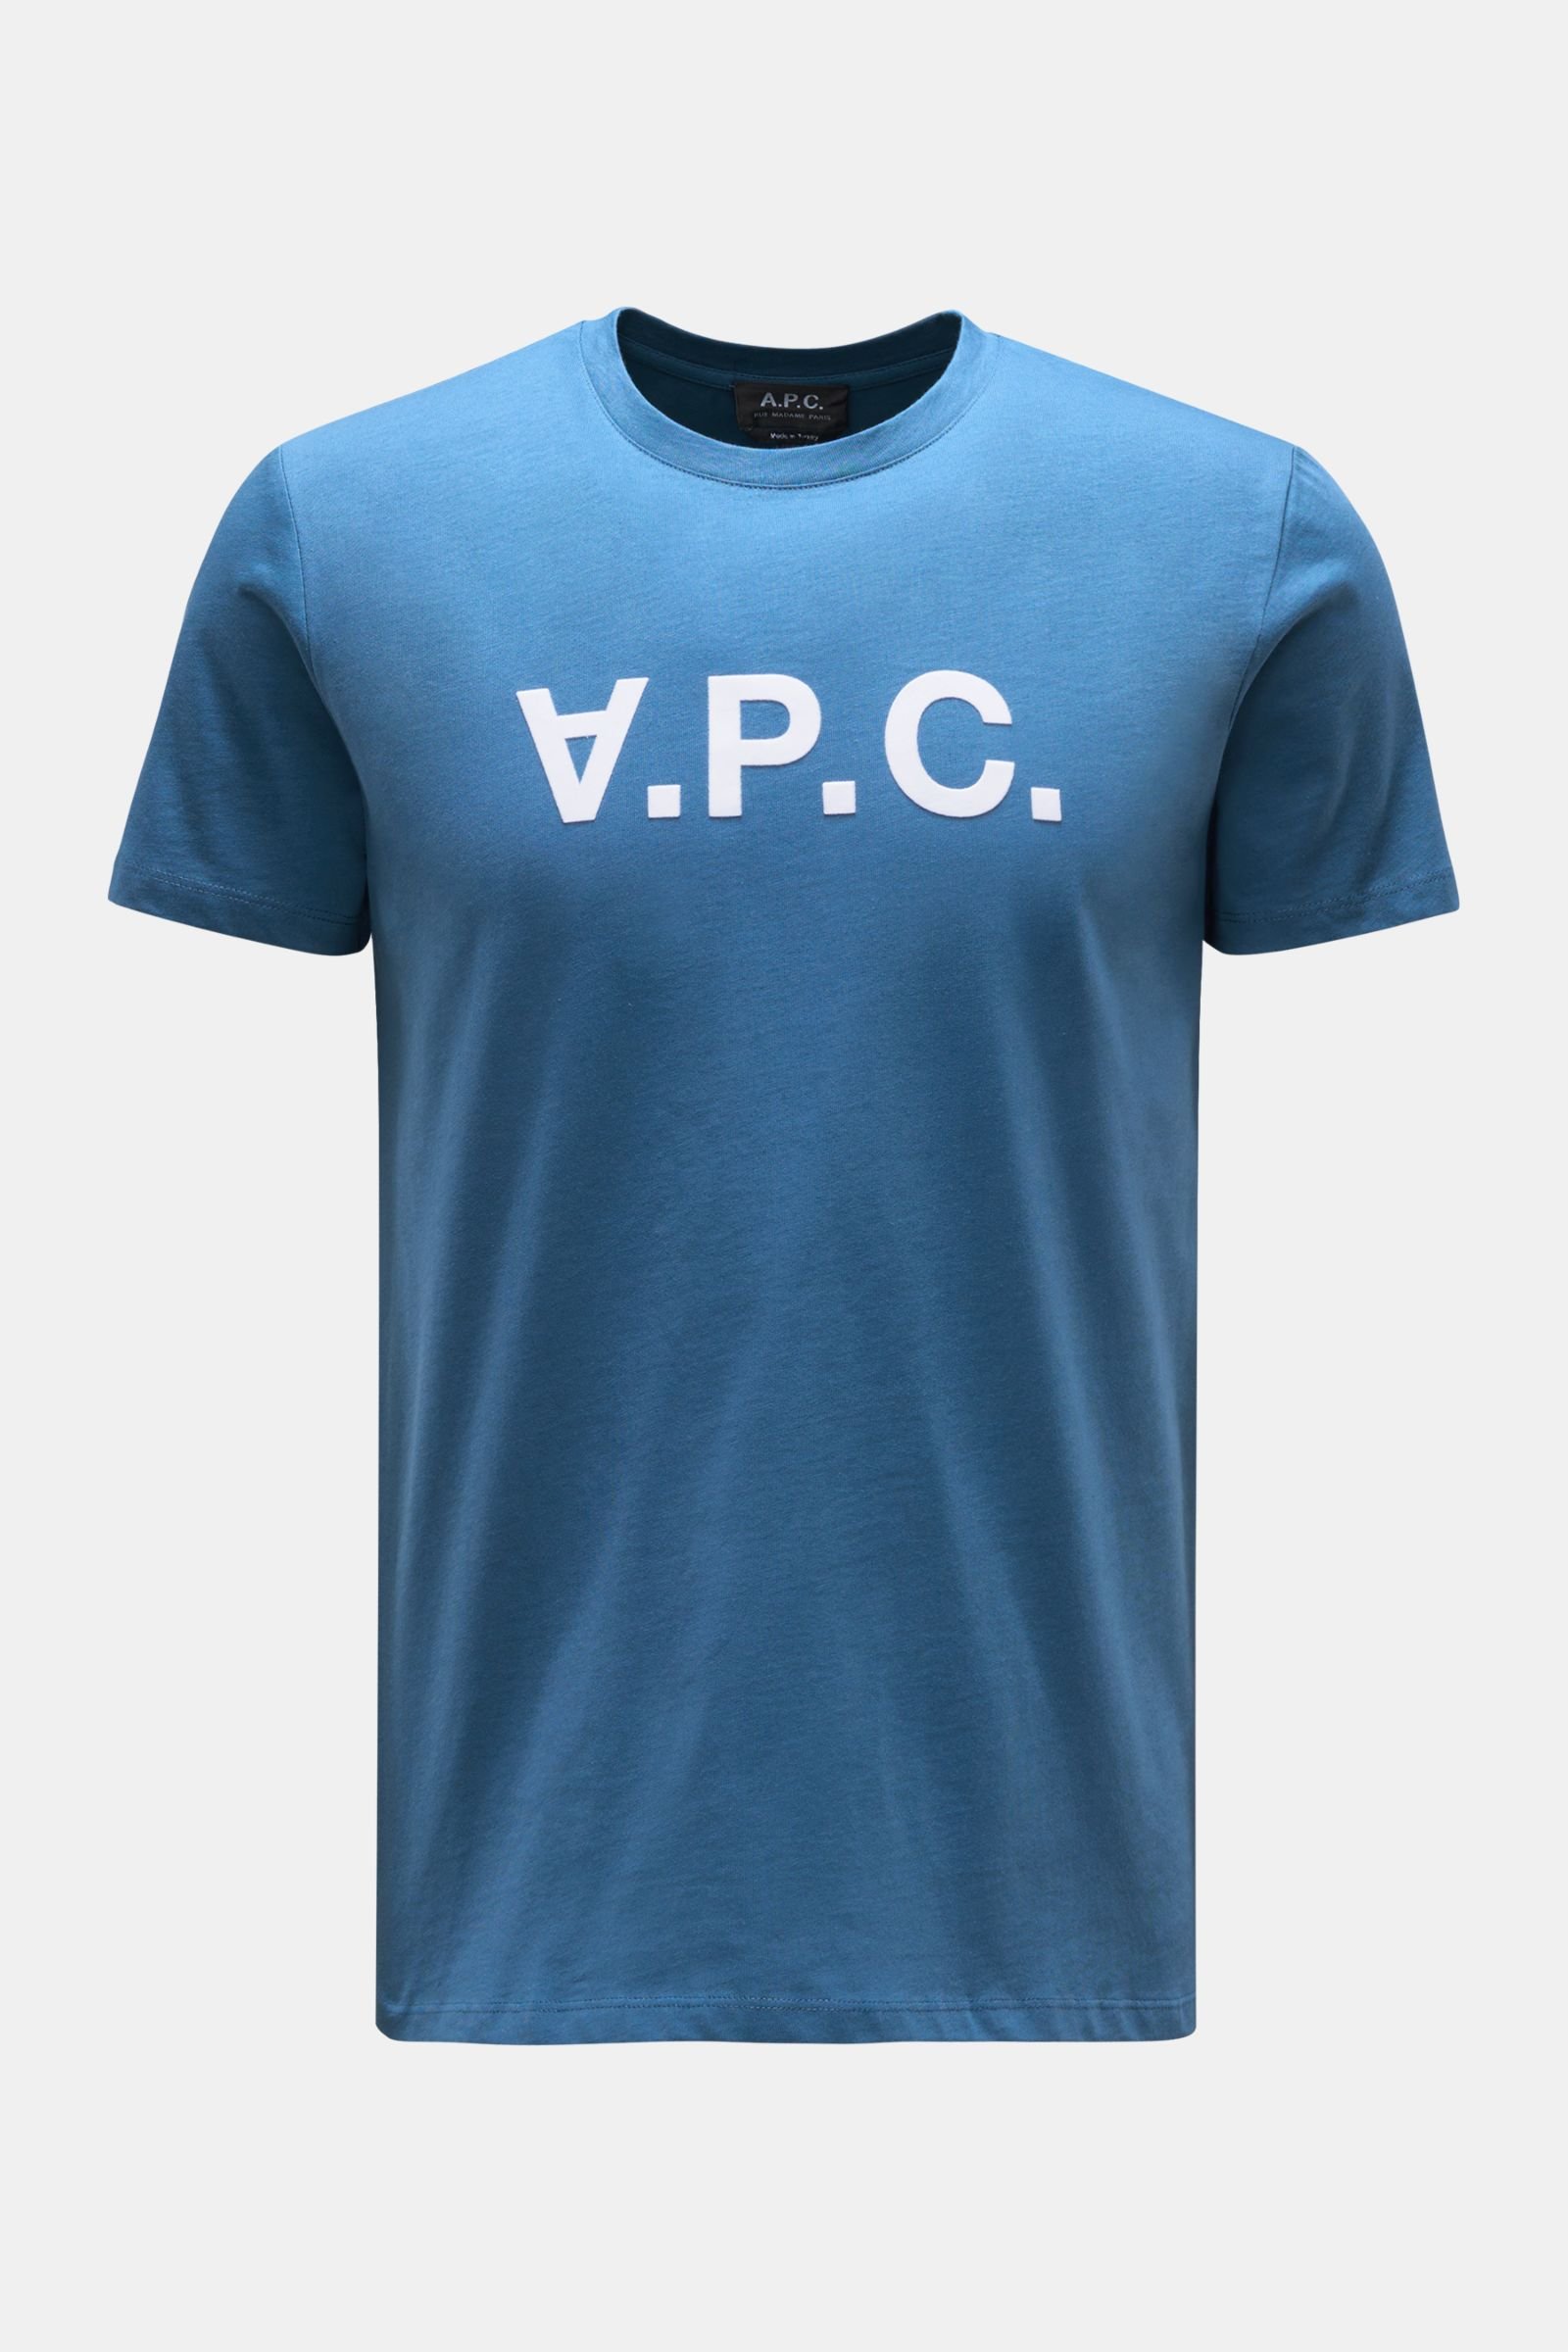 Crew neck T-shirt 'VPC' teal